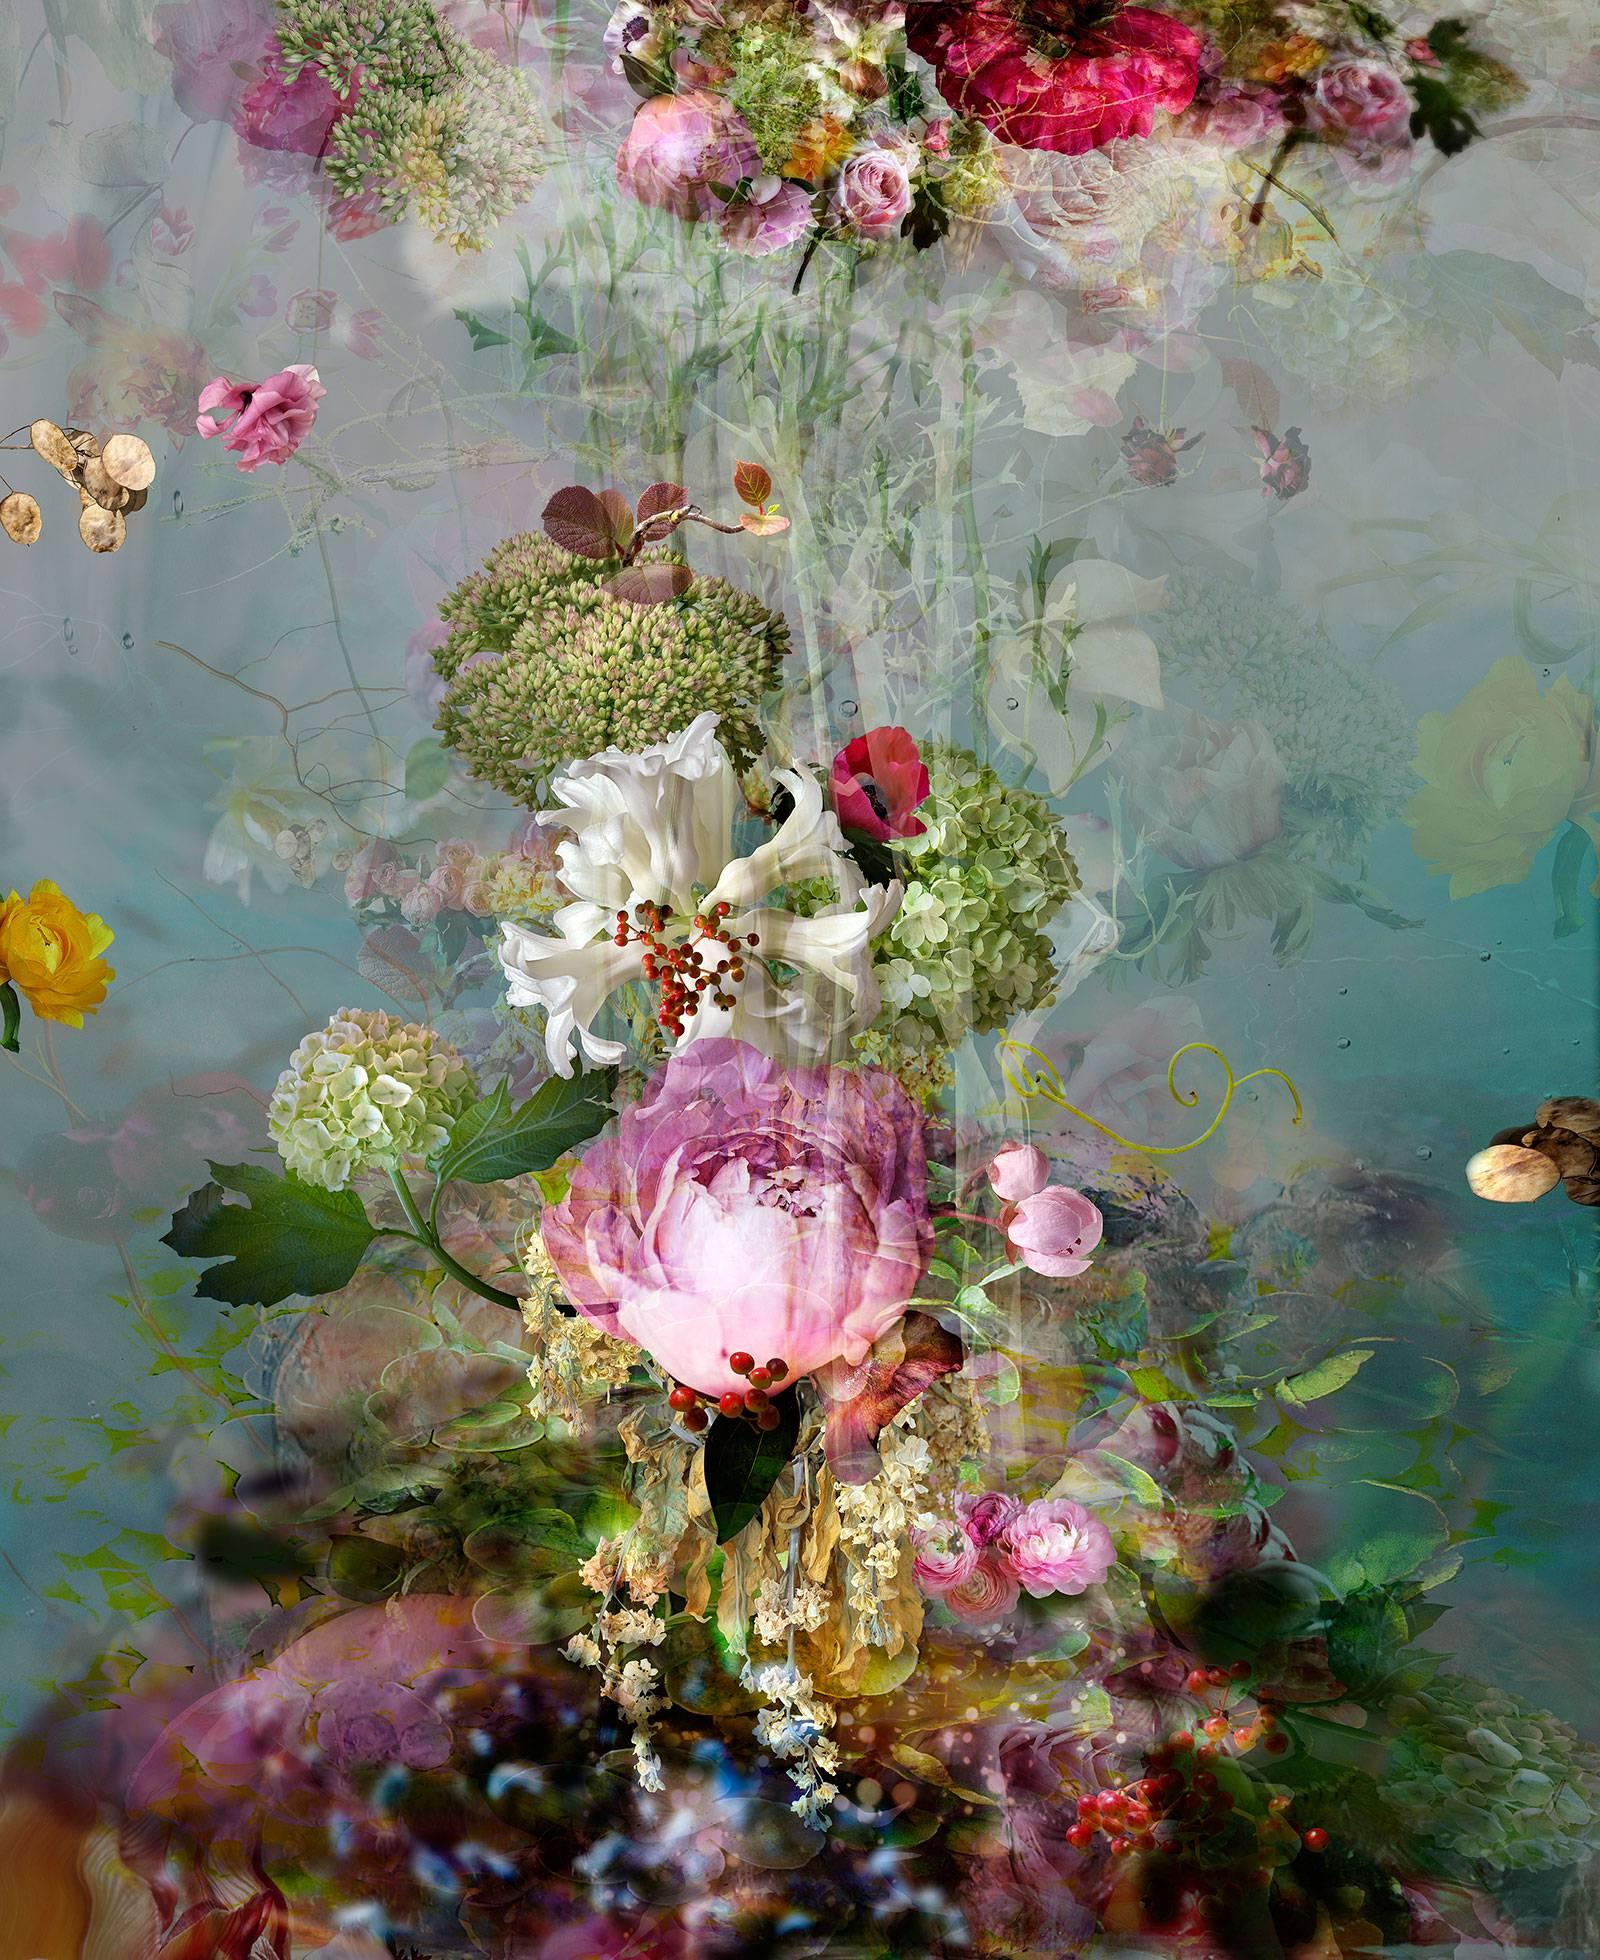 Still-Life Photograph Isabelle Menin - Sinking #3 - Photographie abstraite contemporaine colorée de natures mortes florales